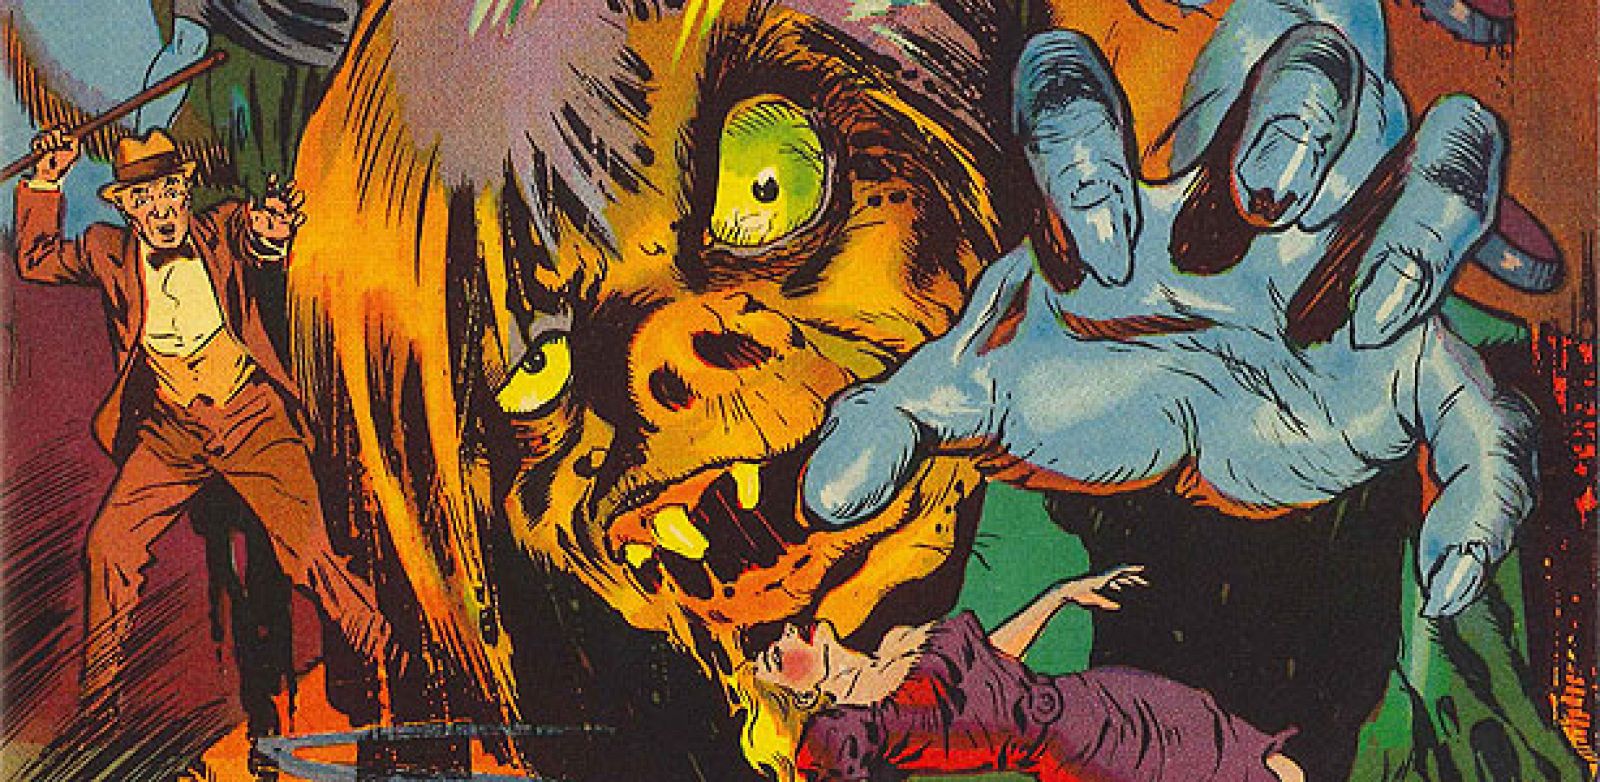 Fragmento de una de las portadas recogidas en 'Four Color Fear, cómics de horror de los años 50'